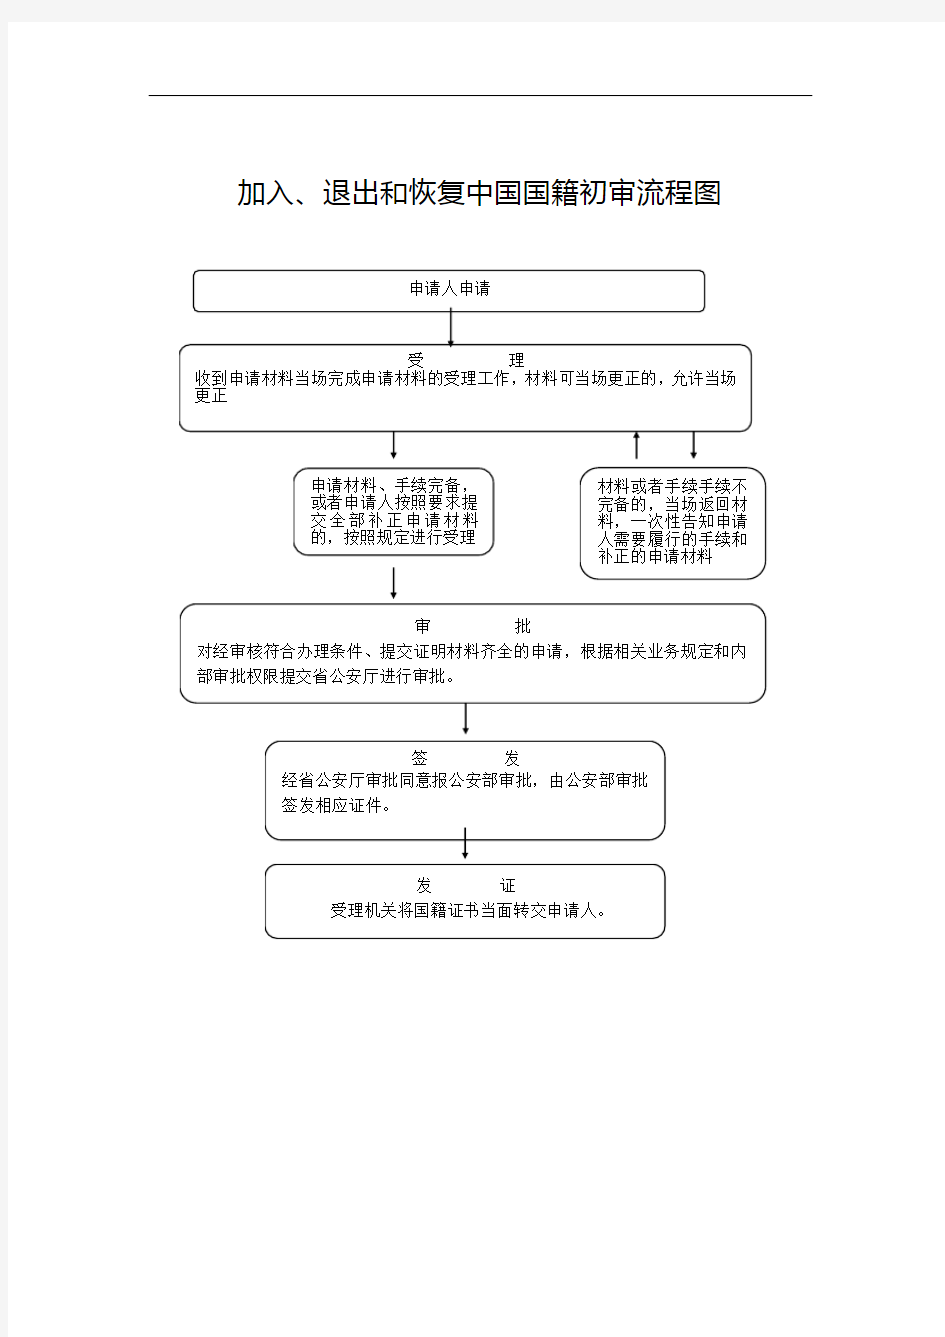 加入、退出和恢复中国国籍初审流程图